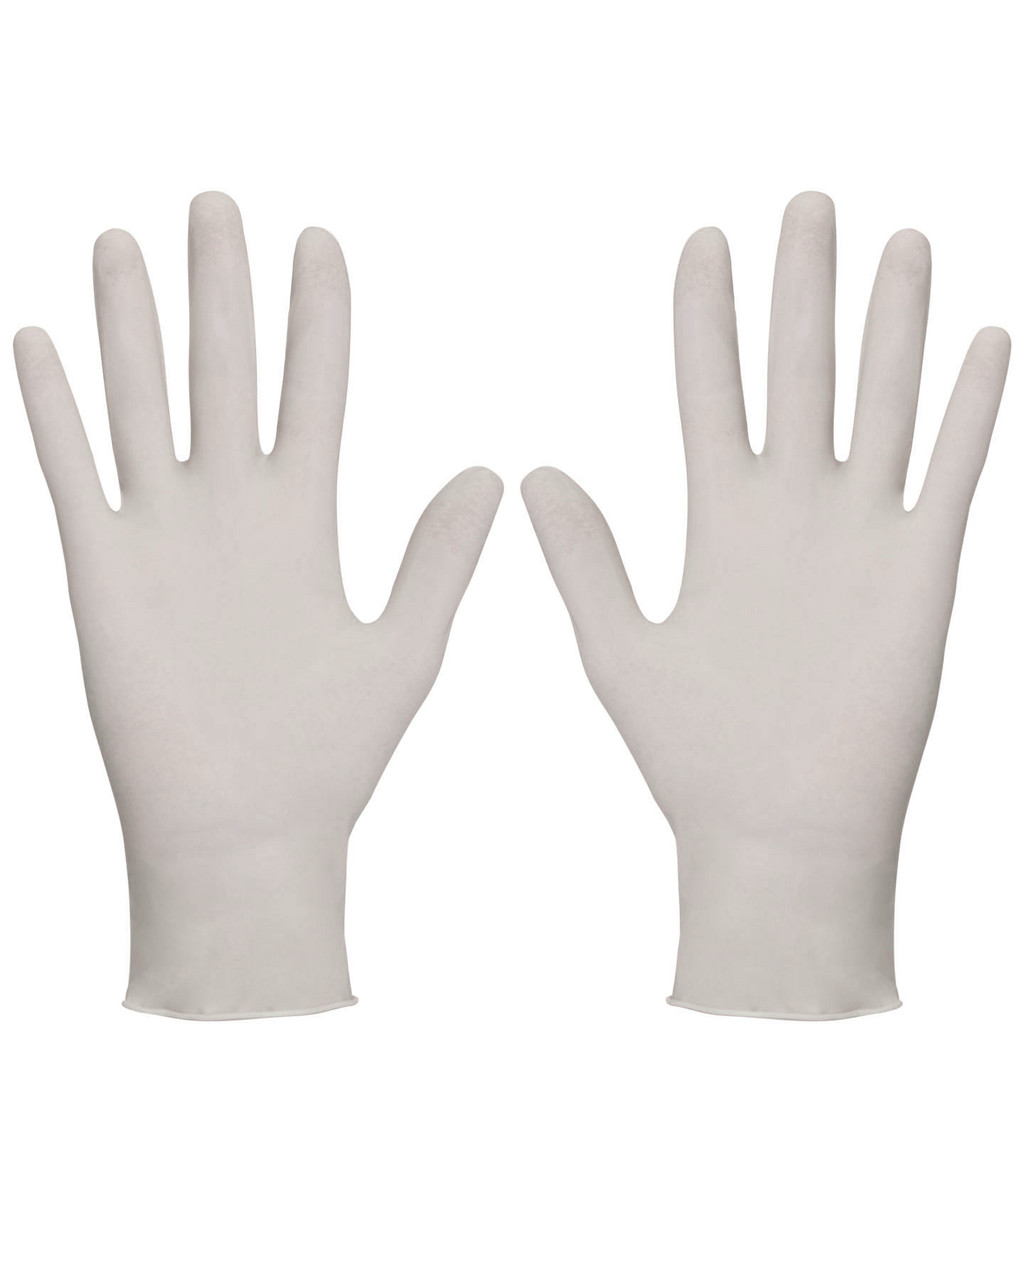 Перчатки хирургические нестерильные (АЗРИ) (отгрузка кратно 25 пар)